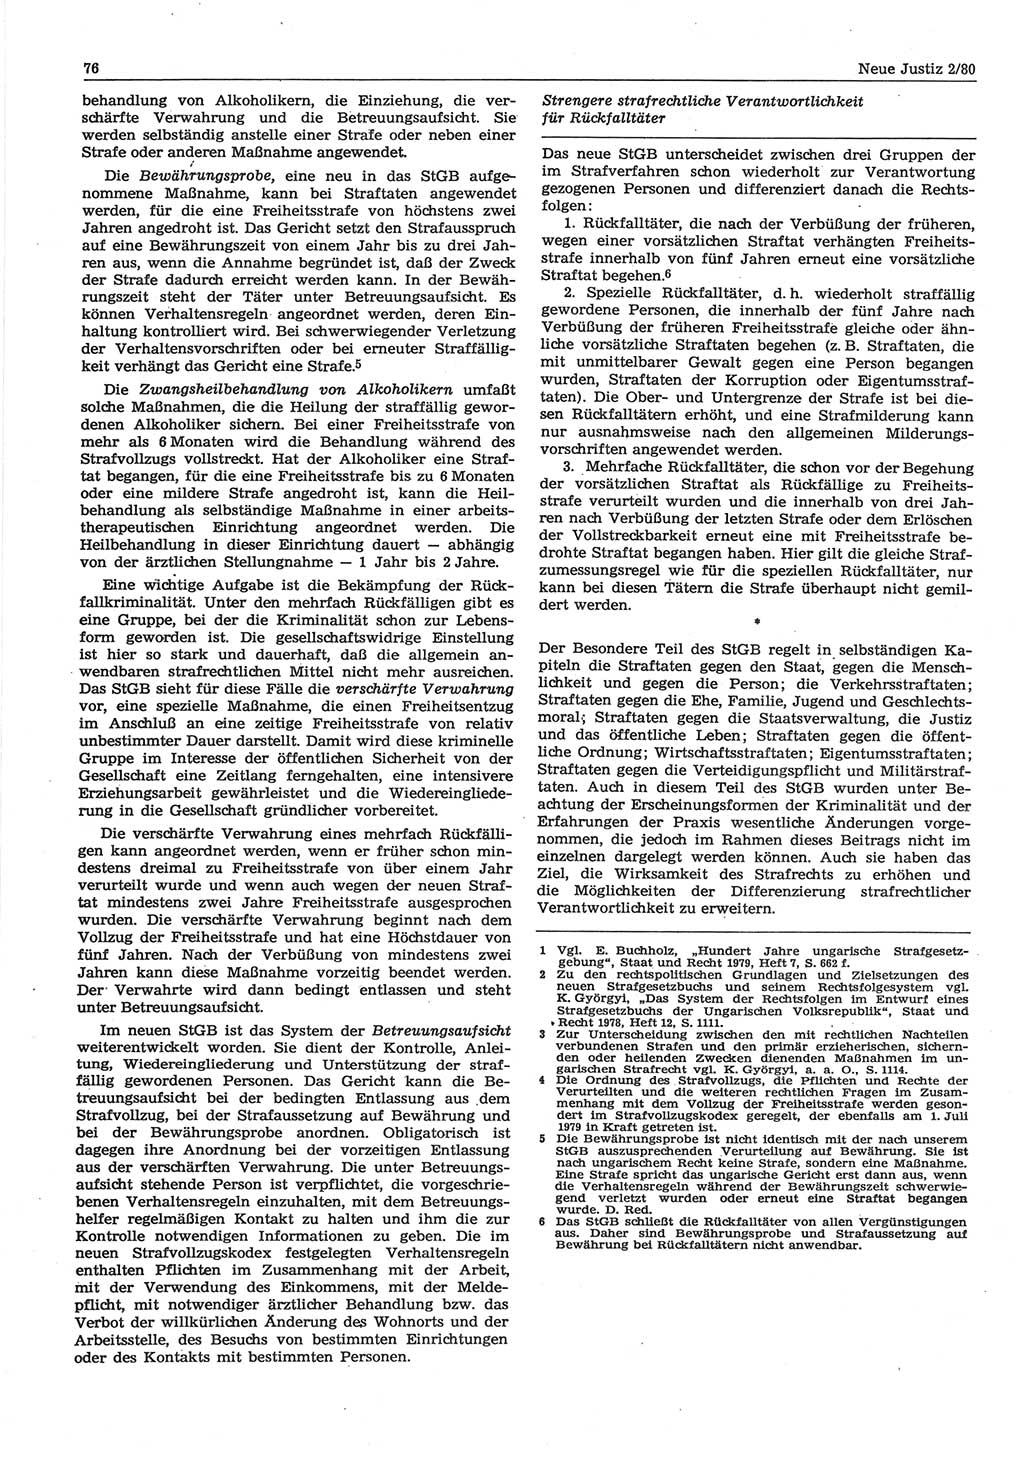 Neue Justiz (NJ), Zeitschrift für sozialistisches Recht und Gesetzlichkeit [Deutsche Demokratische Republik (DDR)], 34. Jahrgang 1980, Seite 76 (NJ DDR 1980, S. 76)